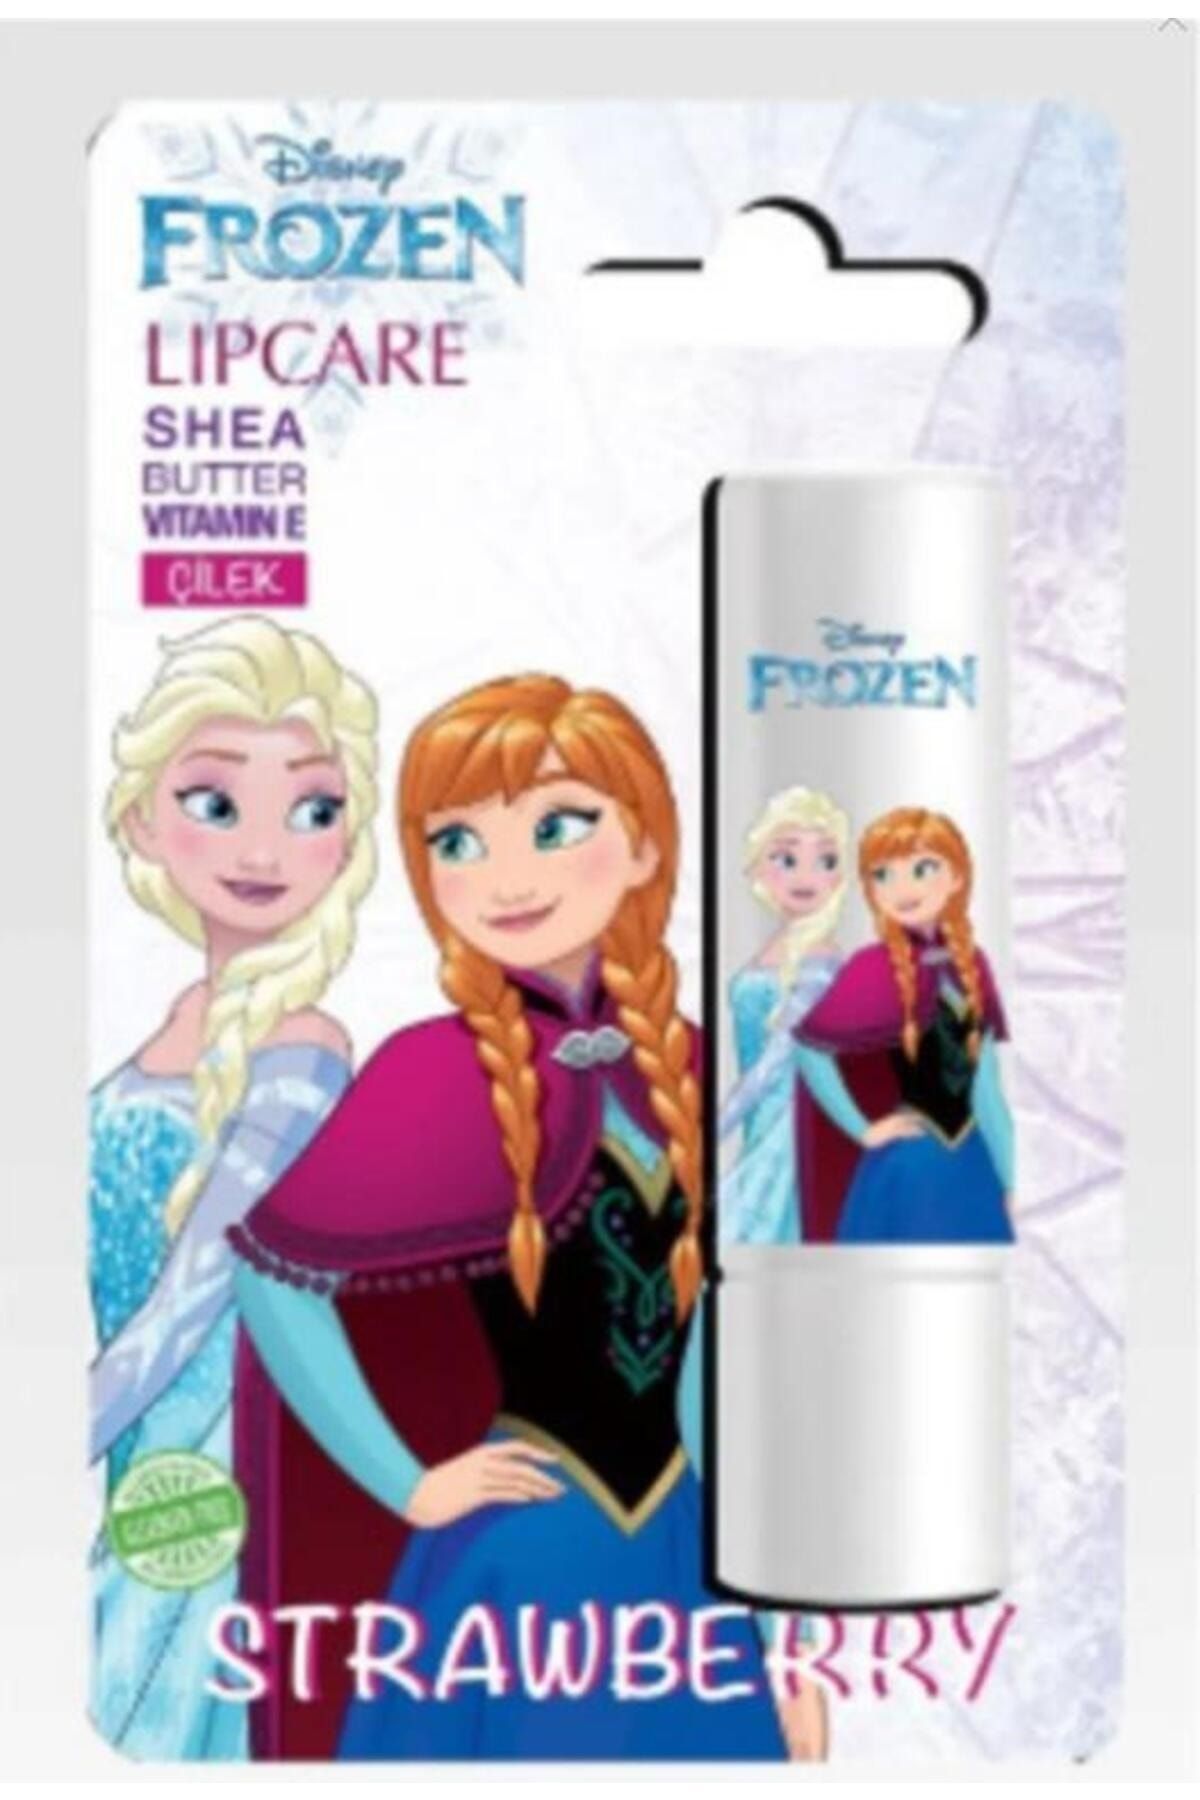 Lol Dısney Frozen II Dudak Koruyucu Lip Care Çilek Beyaz